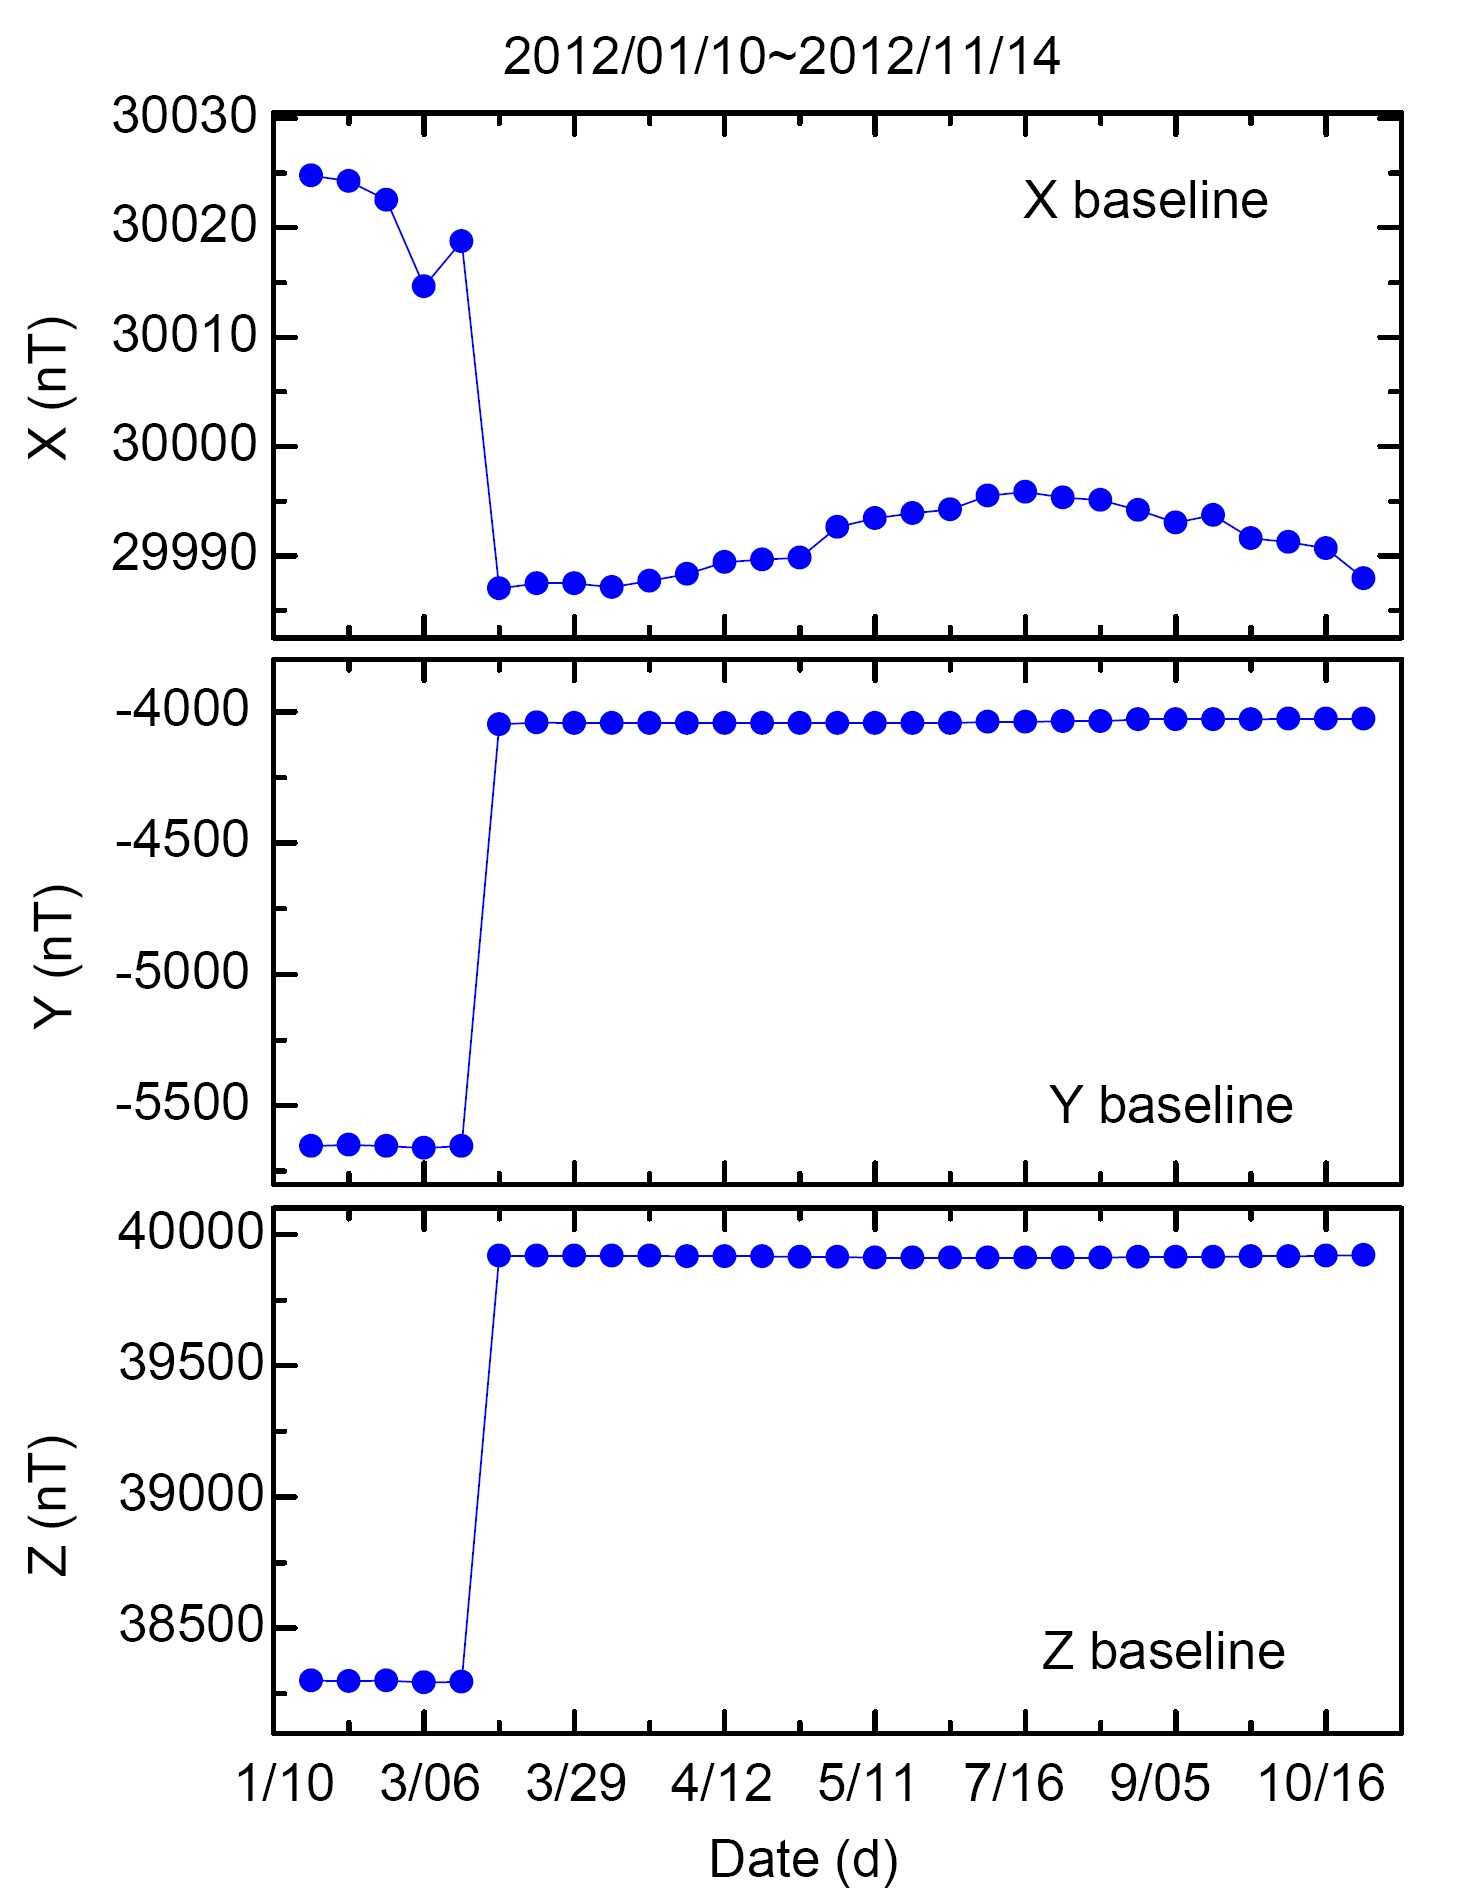 그림 3-2-5. 2012년 1월 10일부터 11월 14일까지 측정한 x, y, z 성분의 베이스라인 값